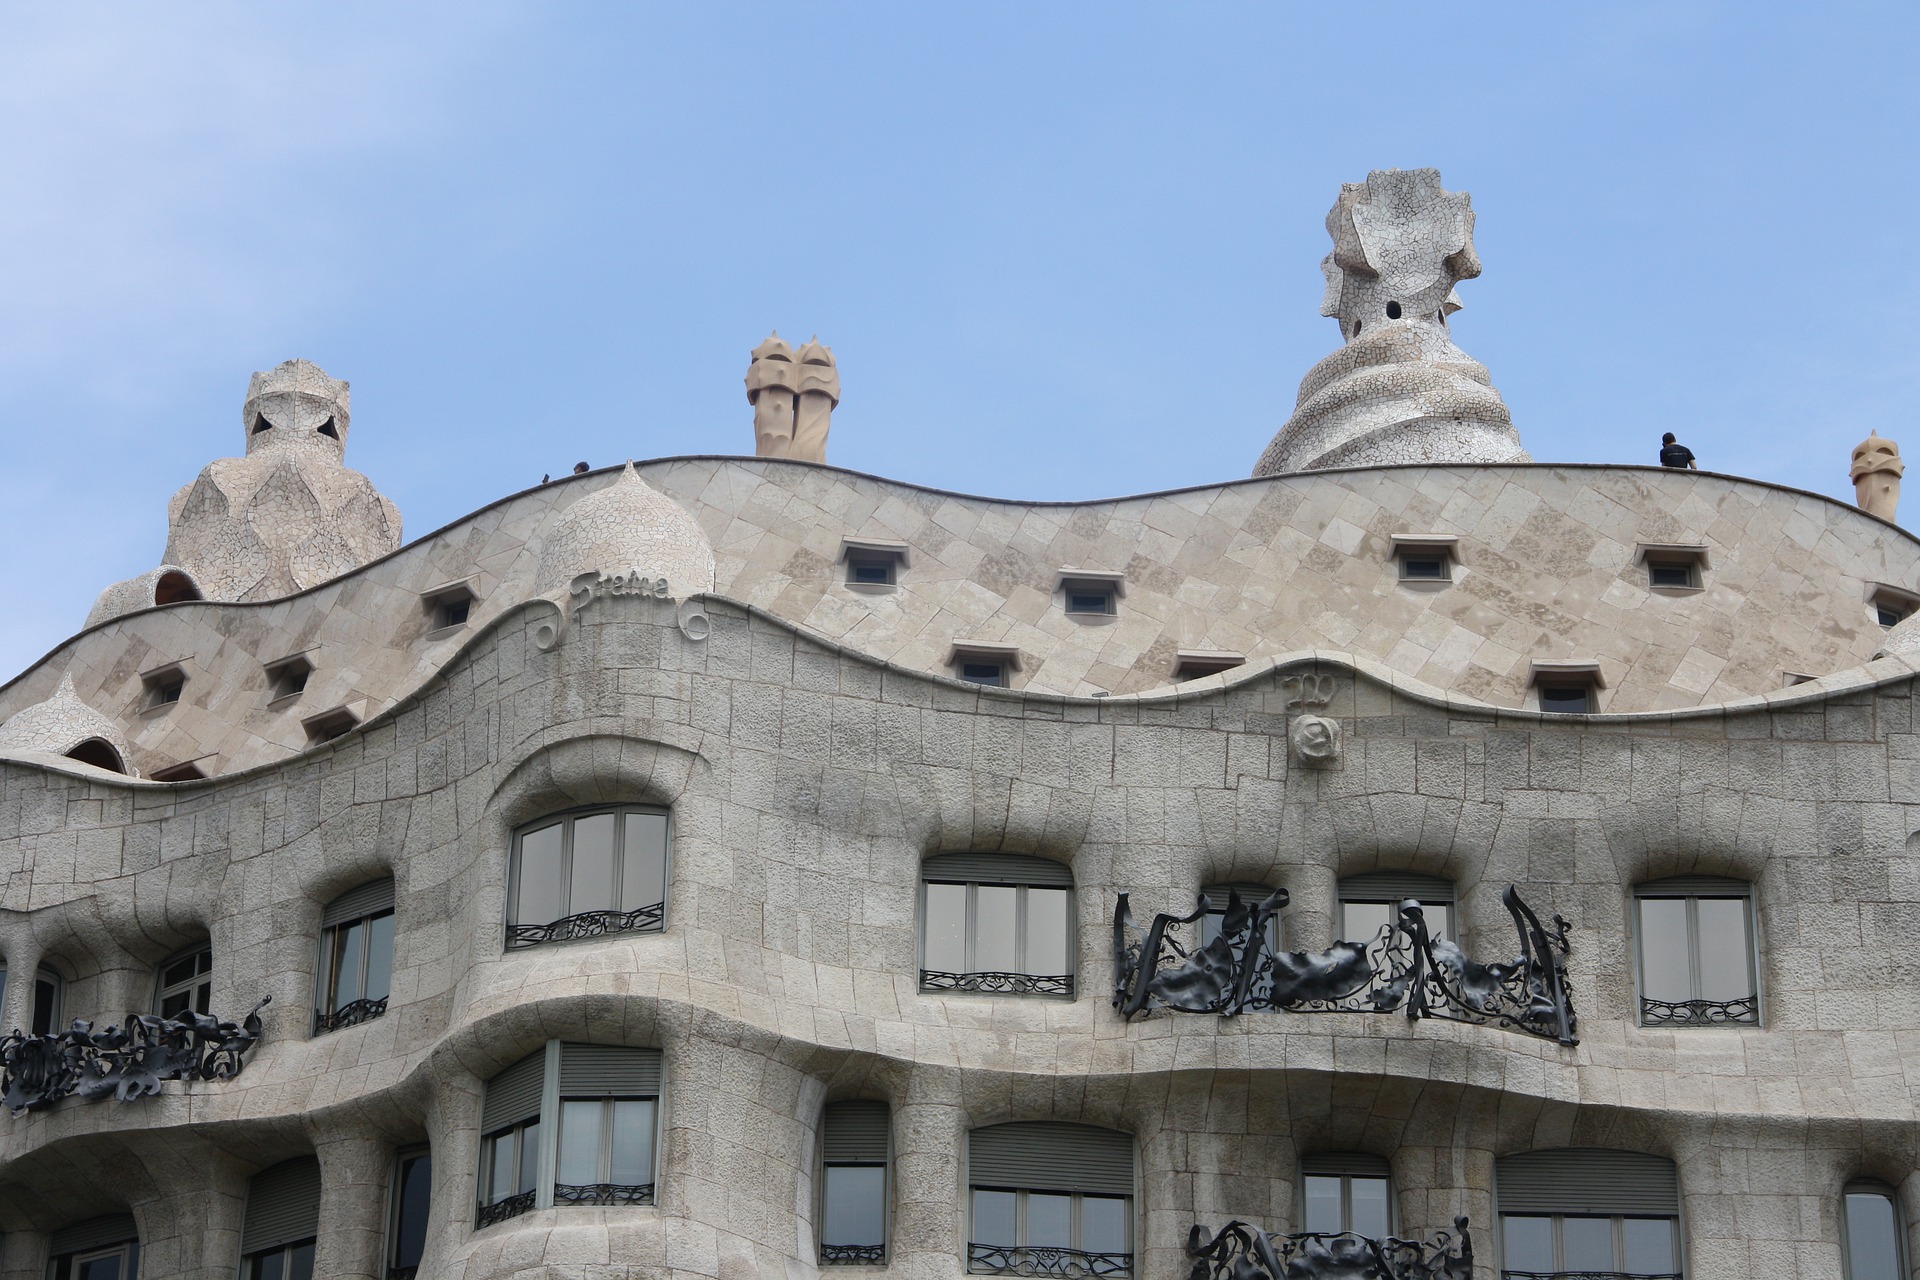 La Pedrera - Casa Milà d' Antoni Gaudí